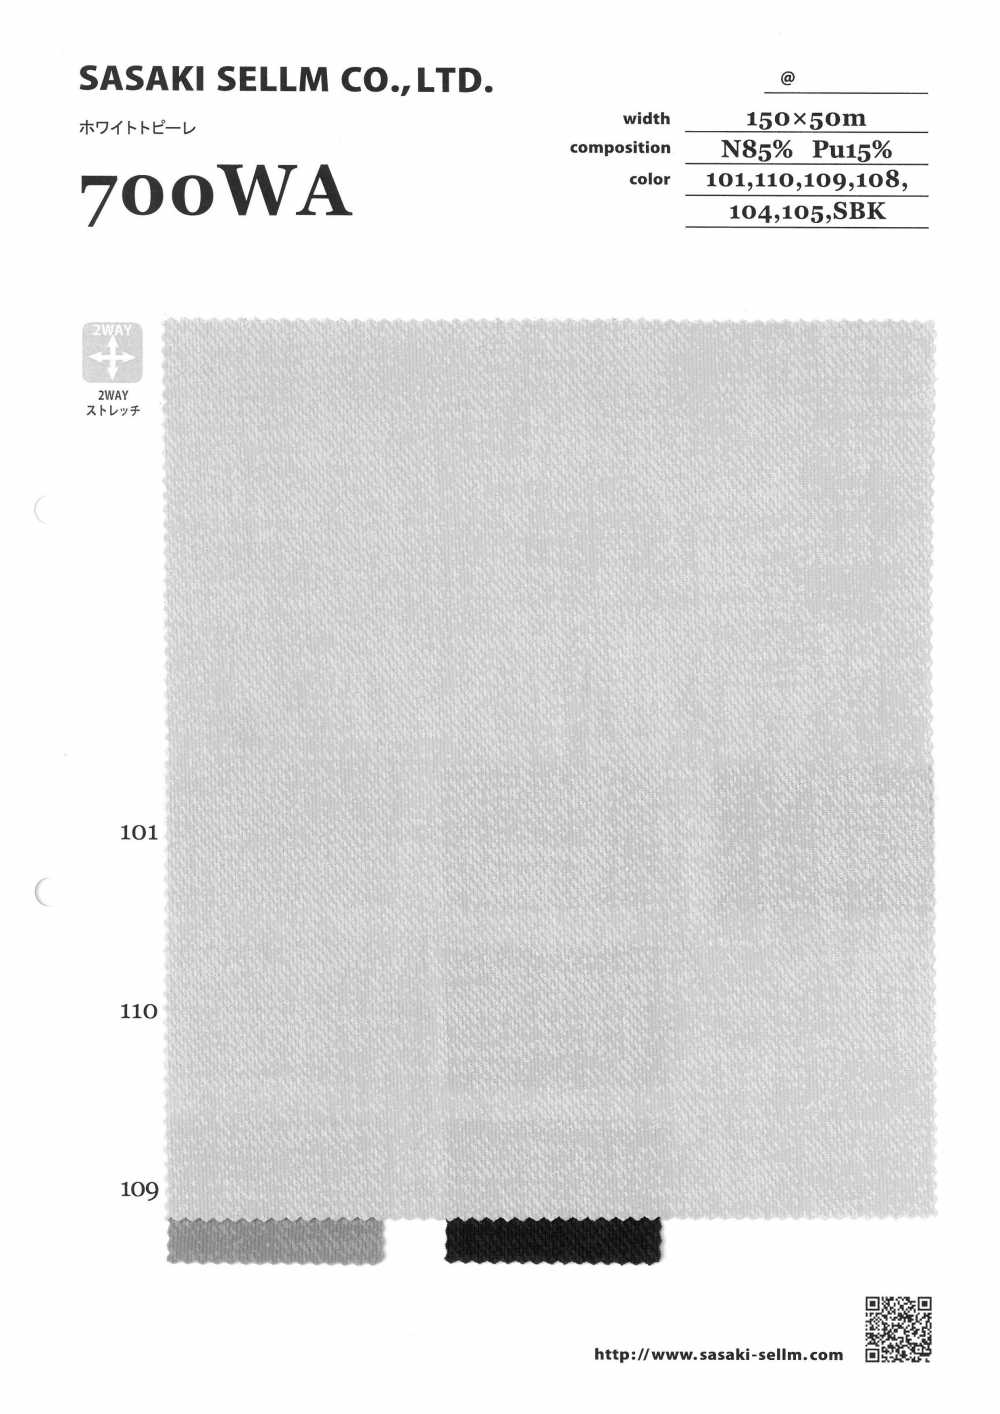 700WA White Topire[Textile / Fabric] SASAKISELLM